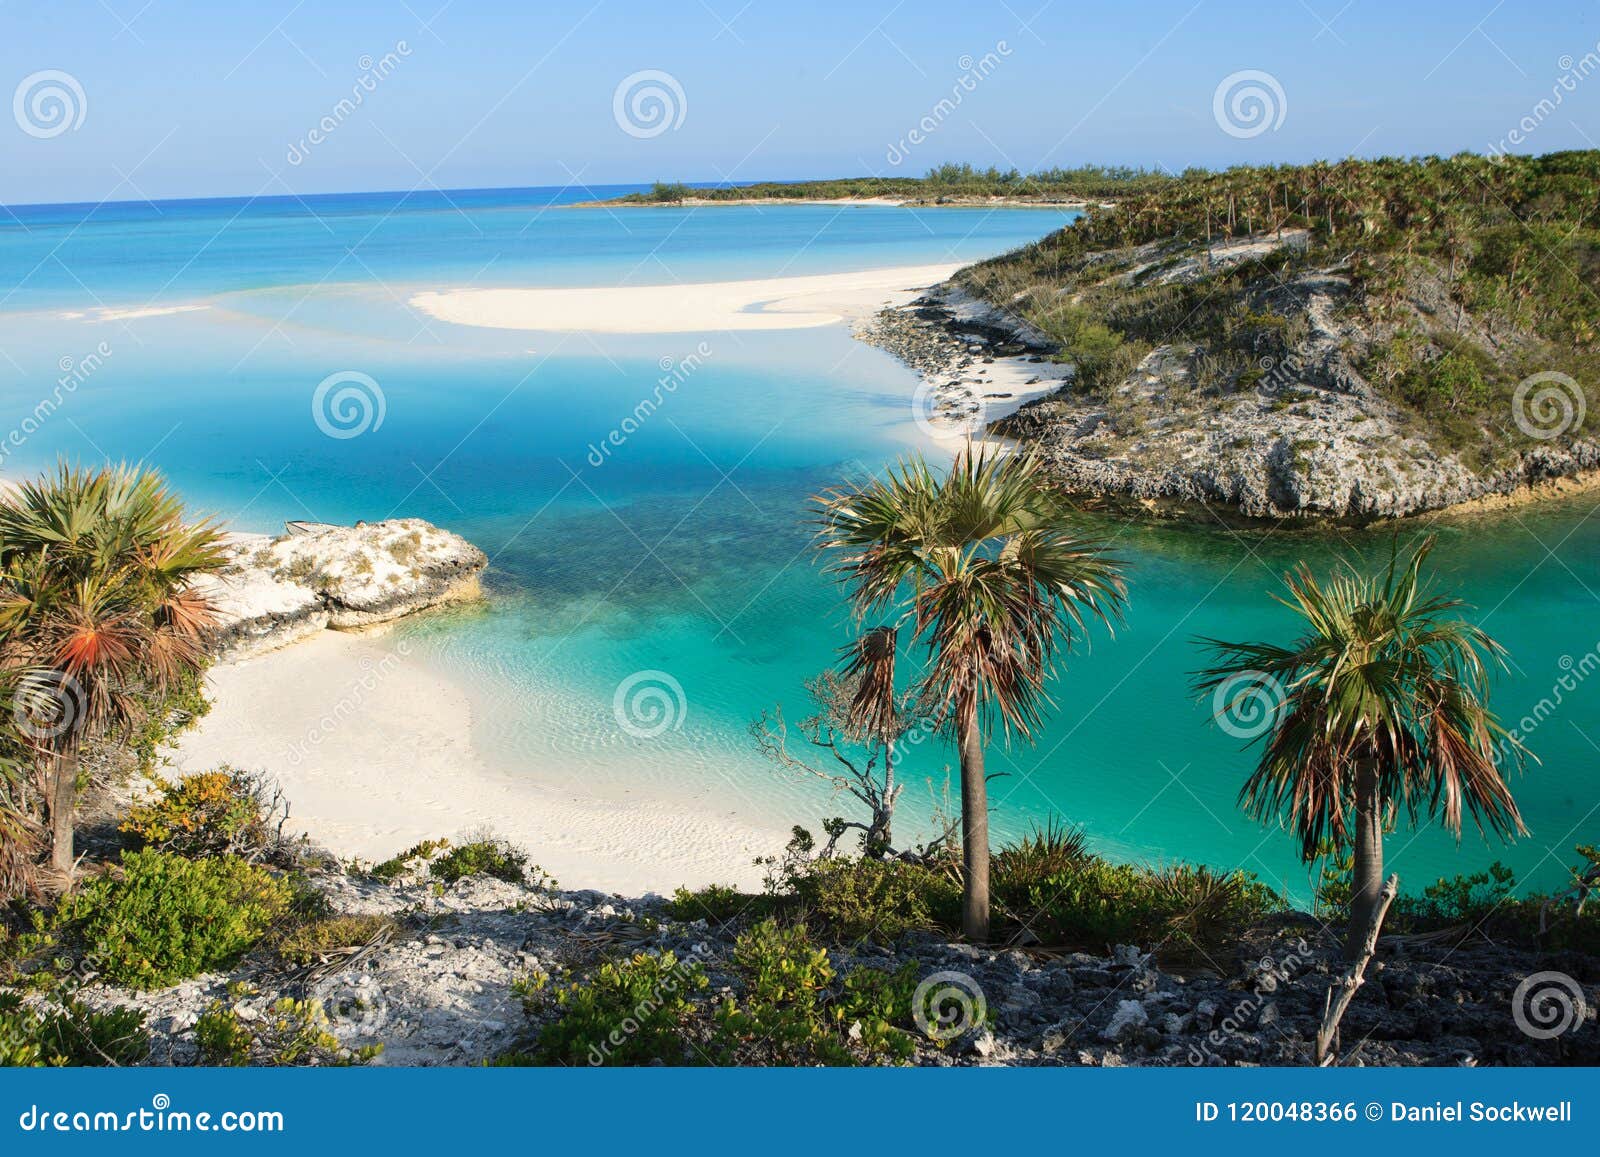 a perfect, beach in the exumas, bahamas